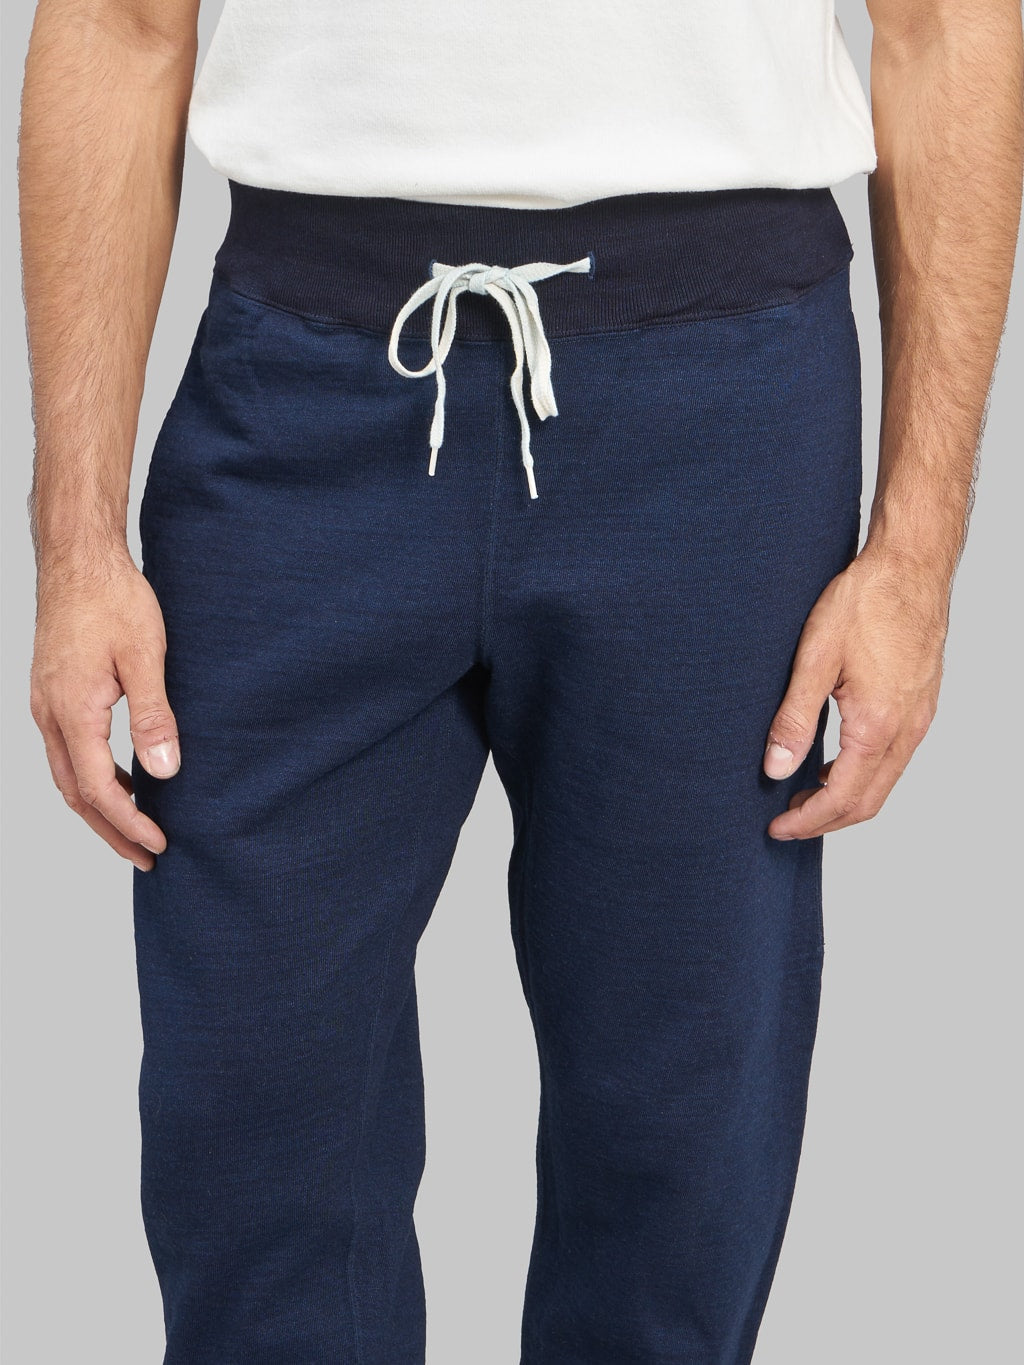 ues sweat pants indigo cotton front fit